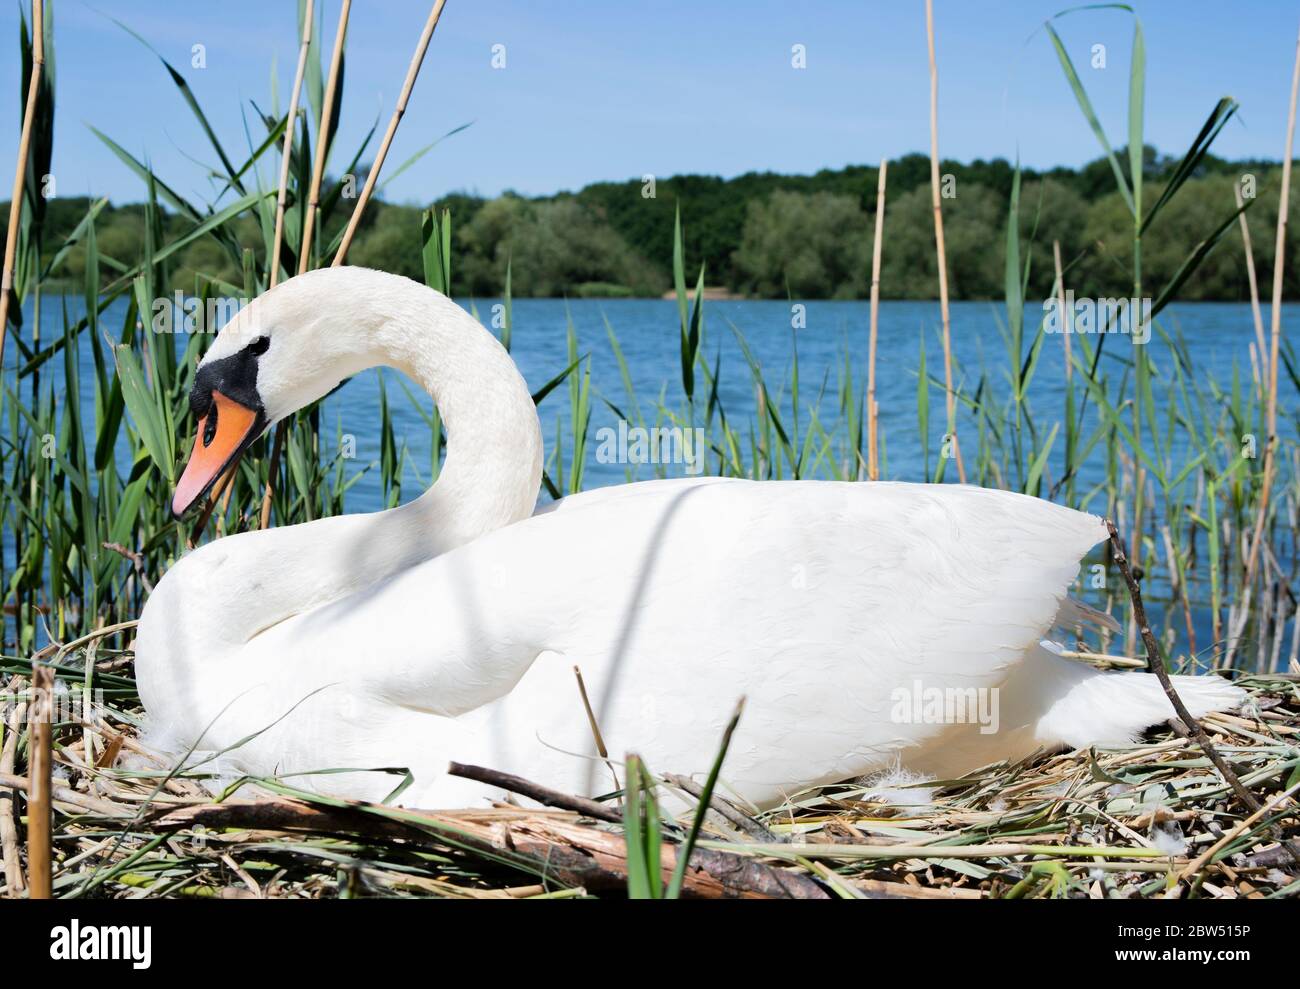 Femelle Mute Swan, Cygnus olor, incubation des œufs sur nid, Brant Reservoir, également connu sous le nom de Welsh Harp Reservoir, Londres, Royaume-Uni Banque D'Images